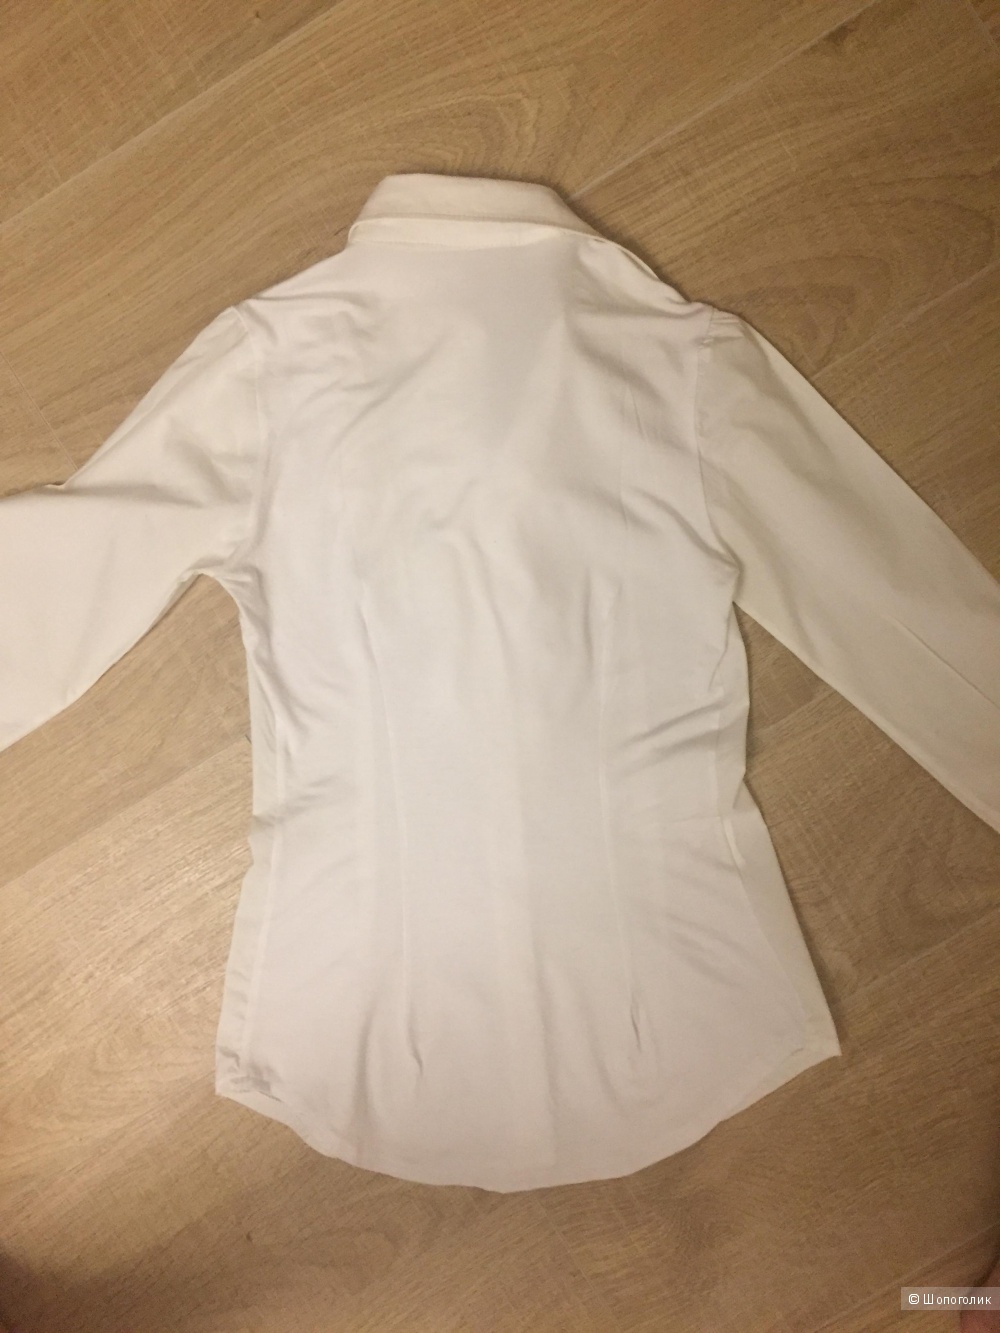 Итальянская блузка Sister,s размер 42.